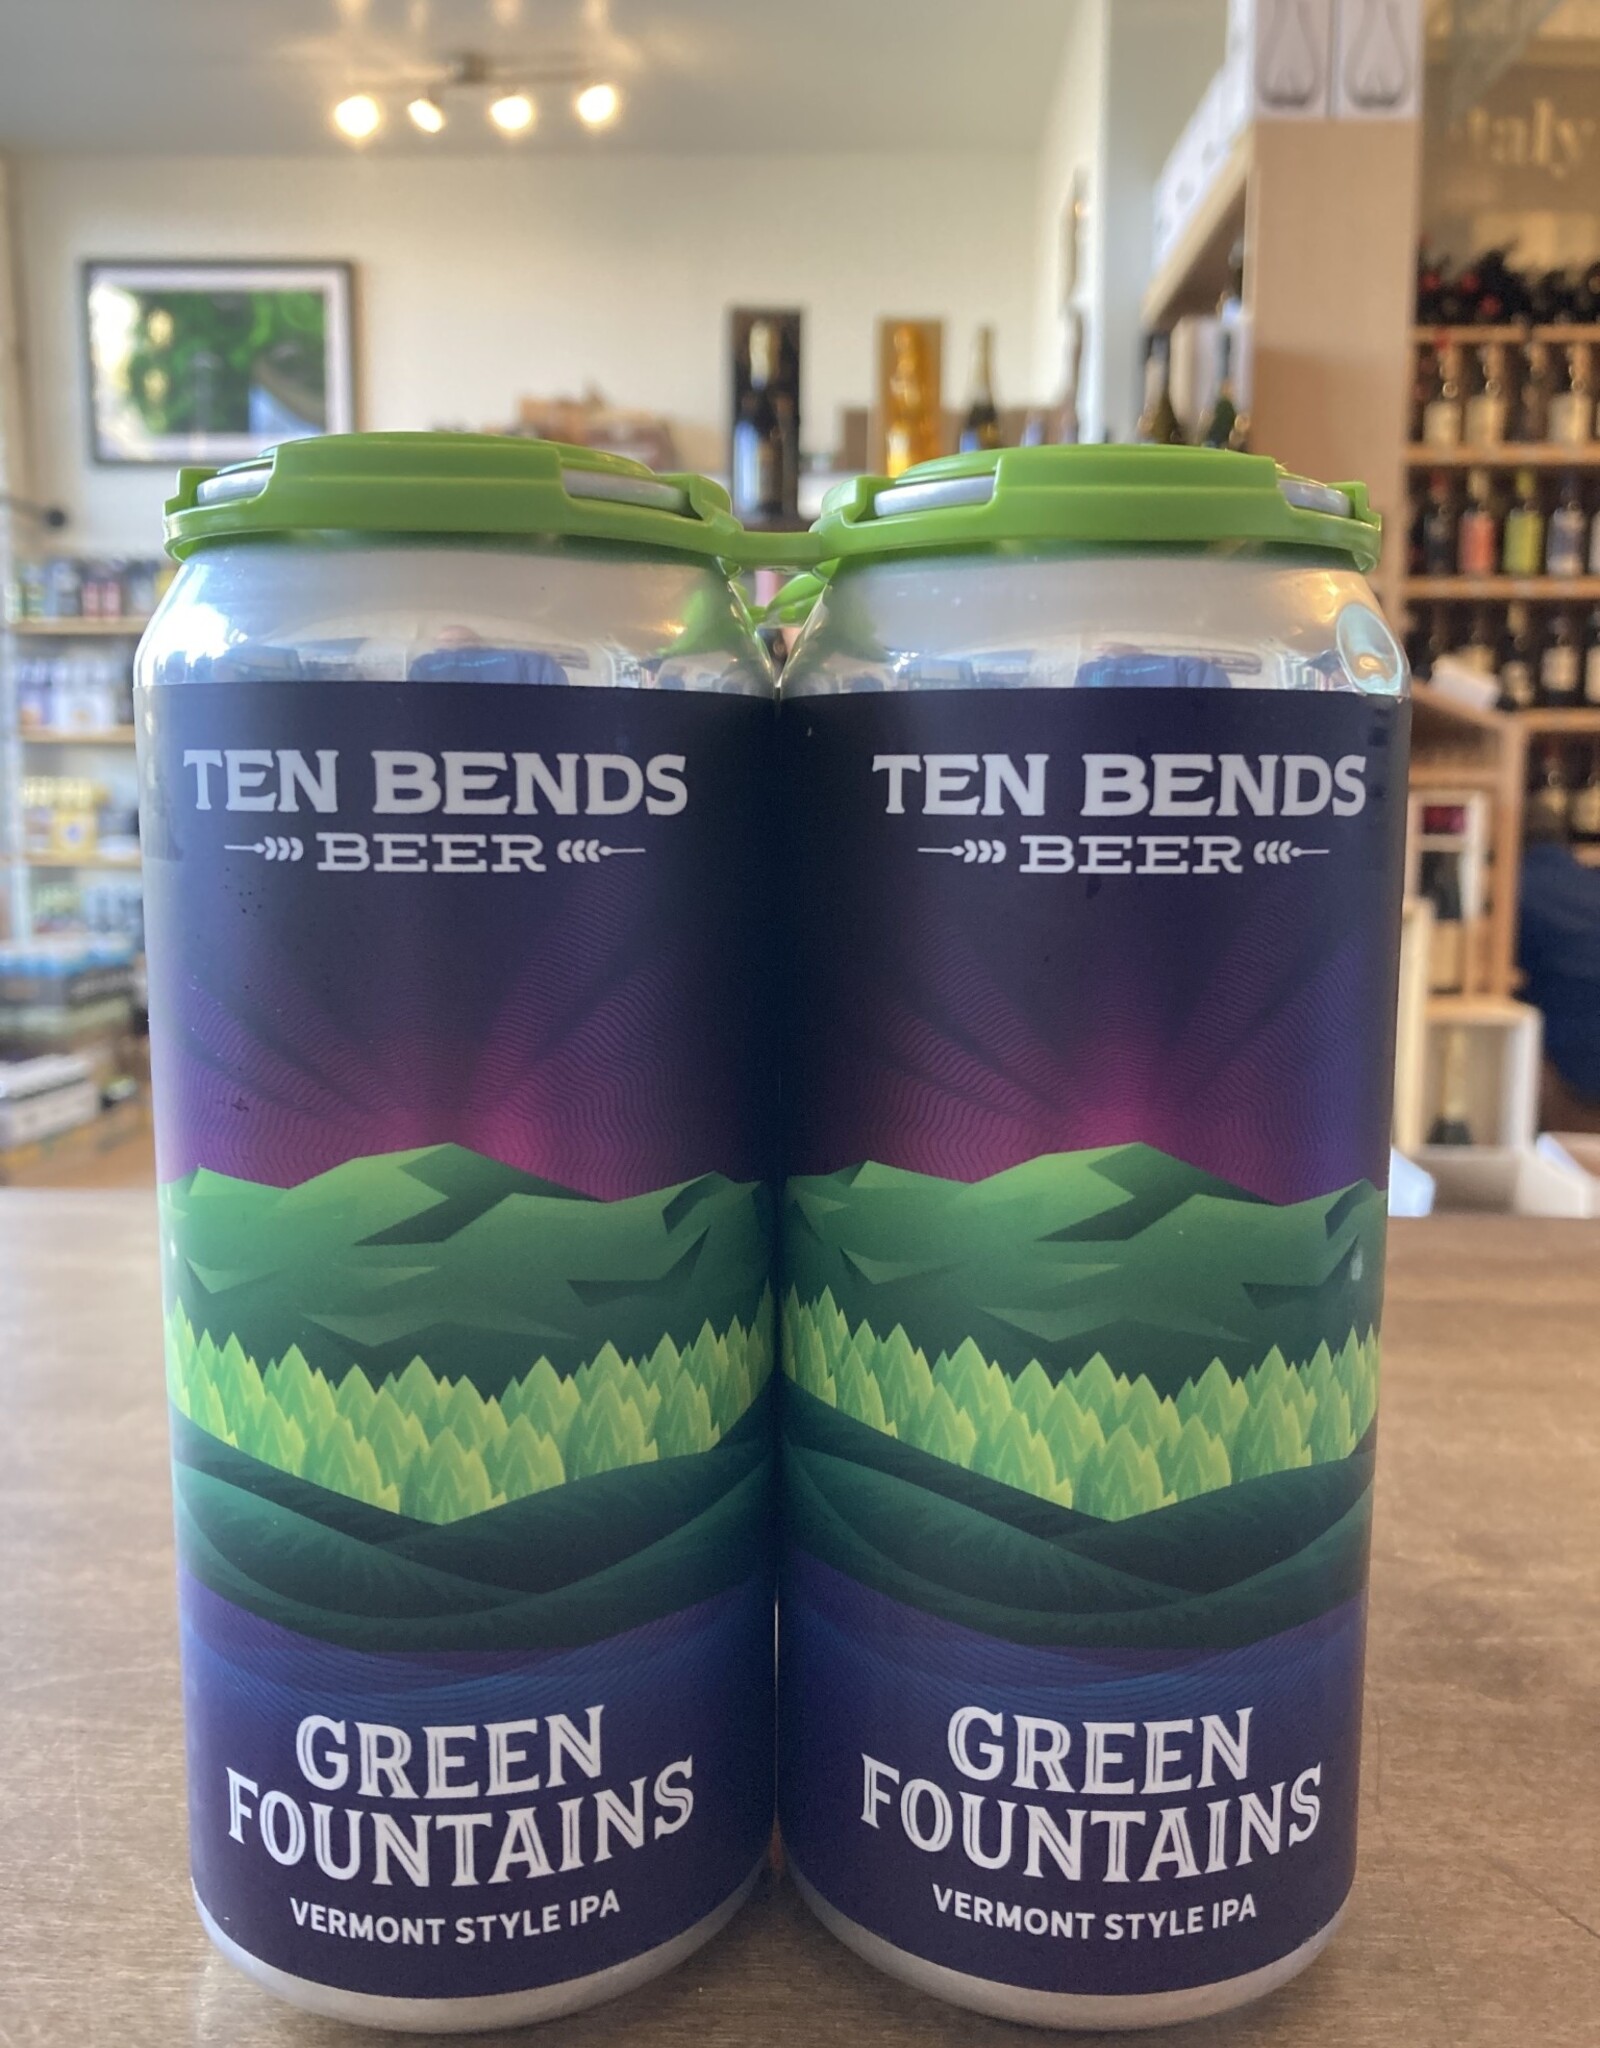 Ten Bends Ten Bends Beer Green Fountains Vermont Style IPA